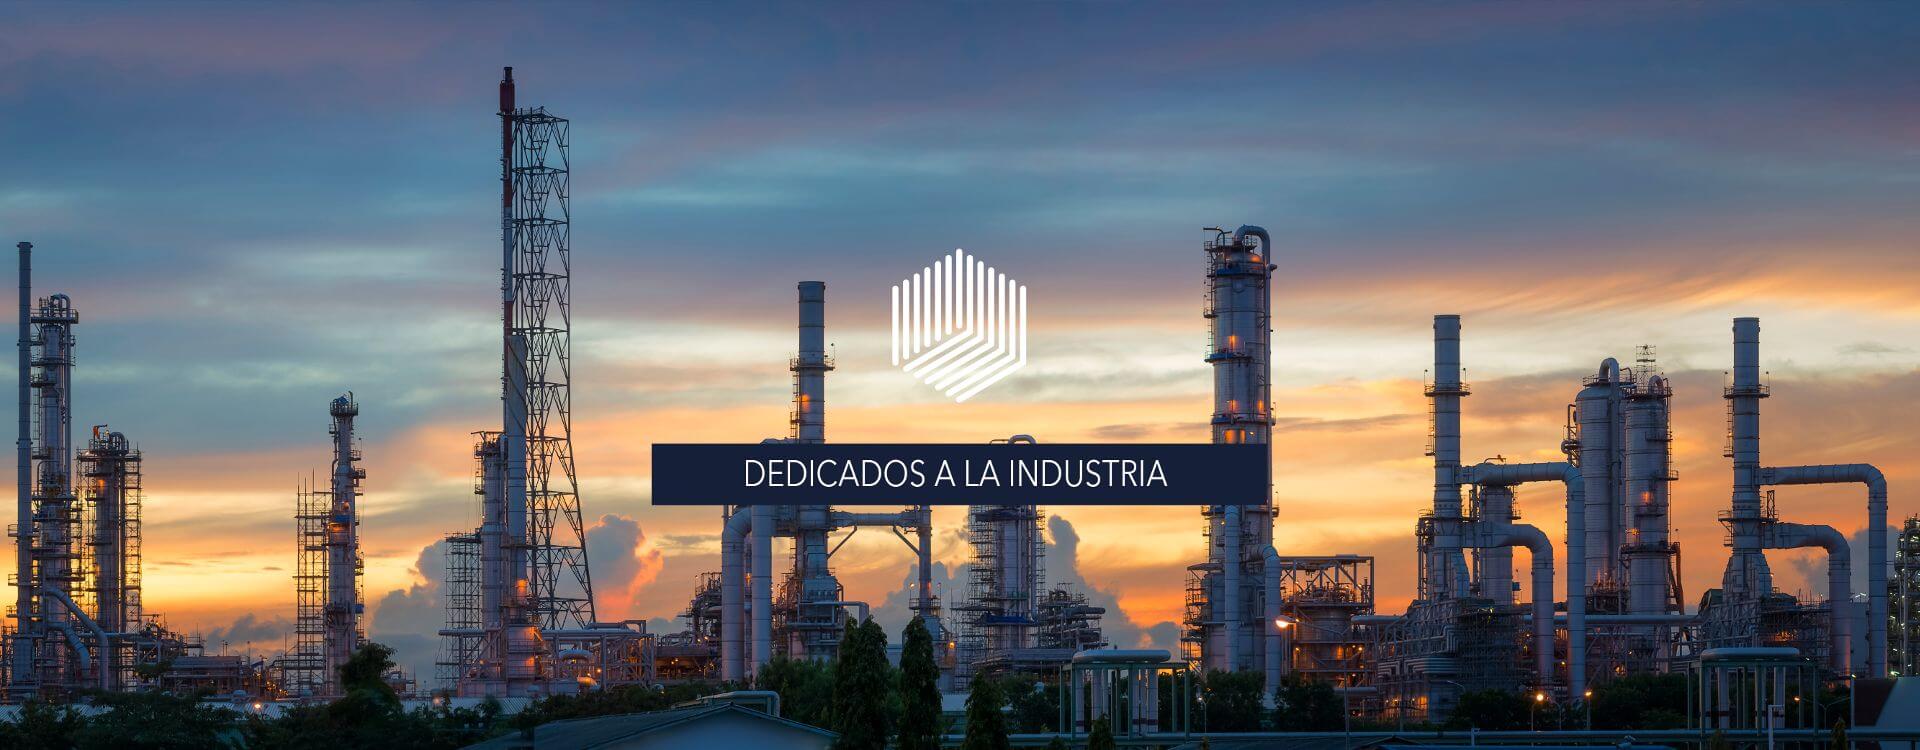 Banner Dedicados a la industria sobre sector industrial Steknos